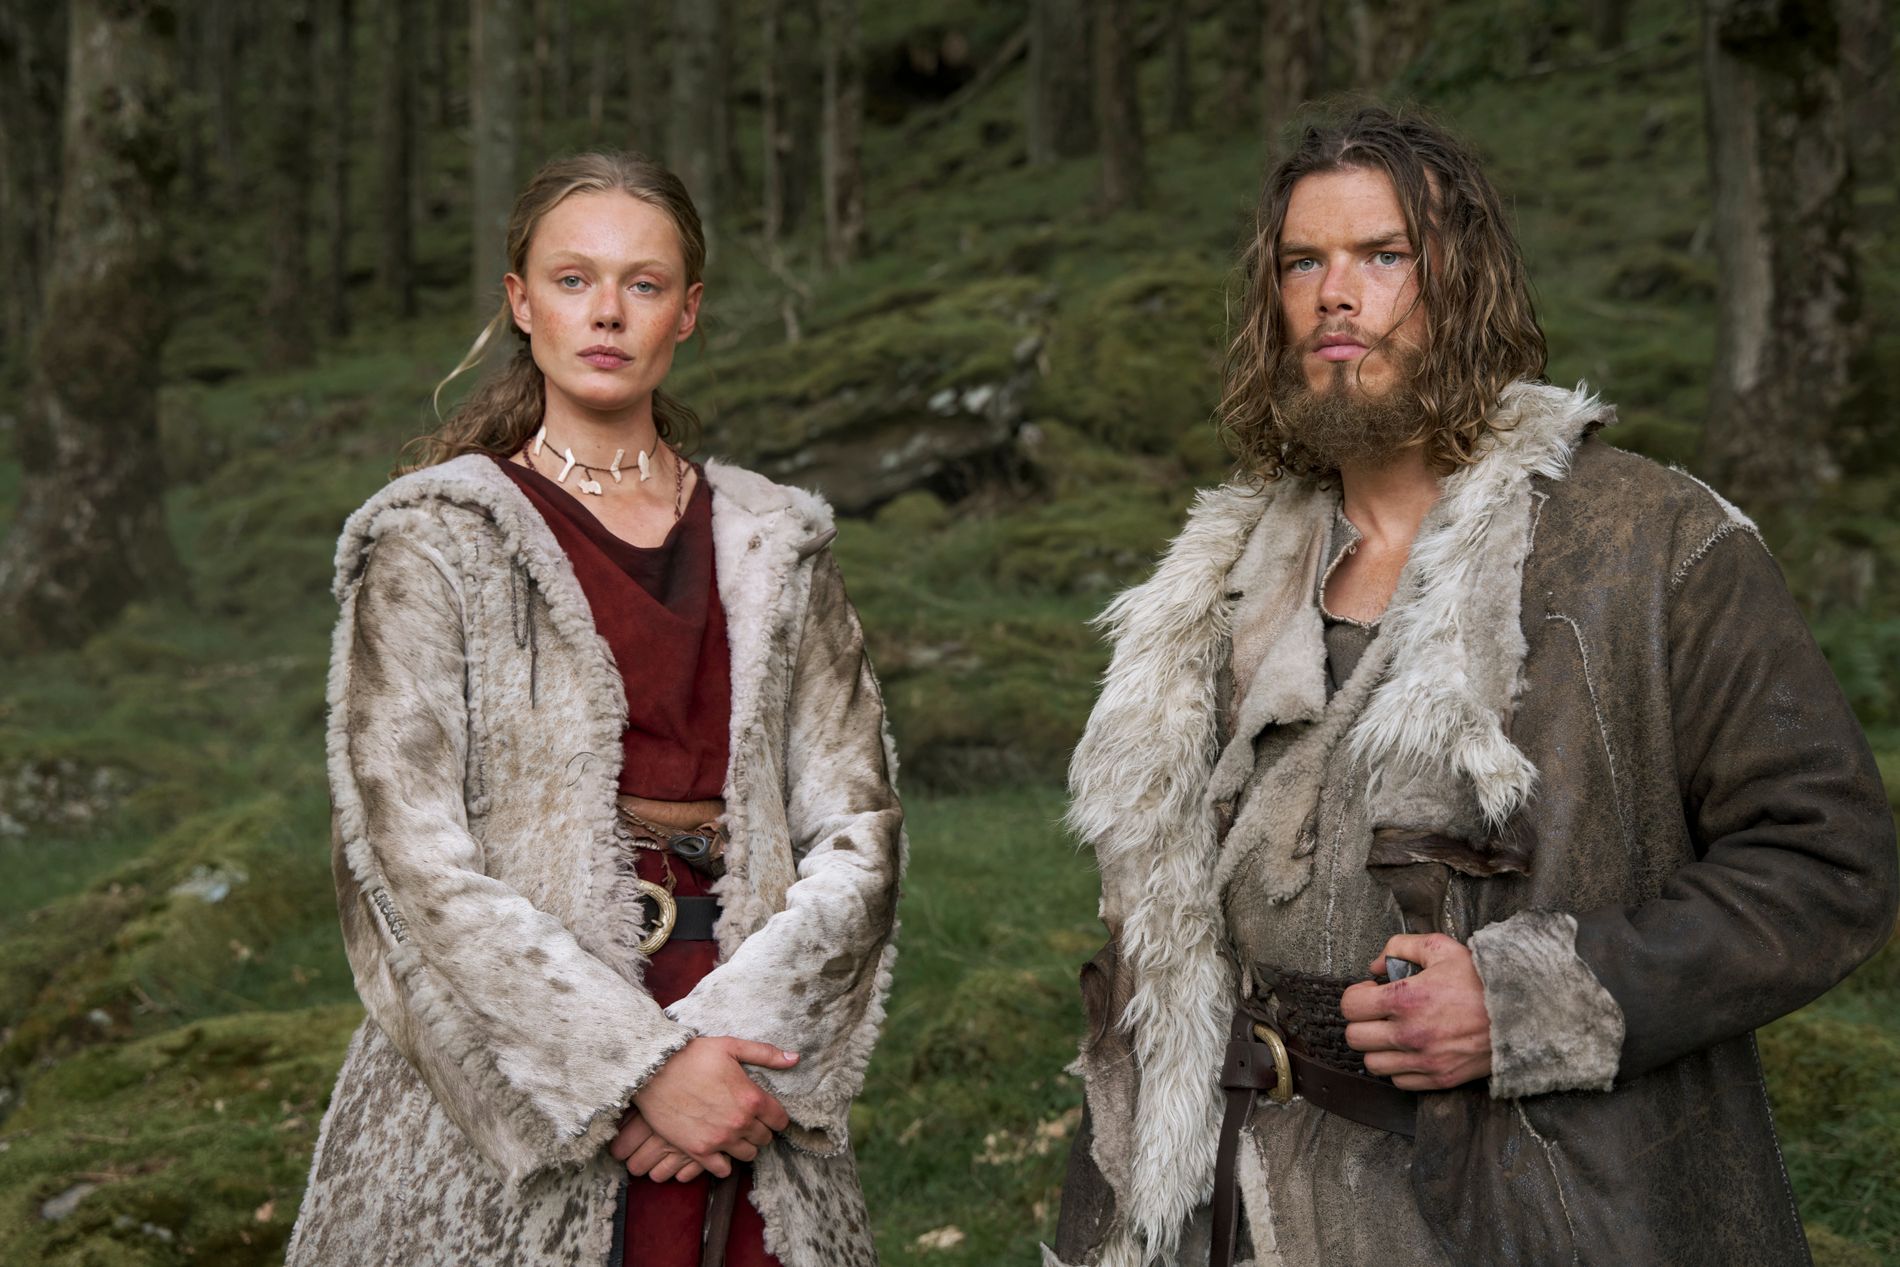 «Vikings: Valhalla» har premiere denne måneden: En ny saga begynner, hundre år etter hendelsene den opprinnelige serien ble avsluttet med.